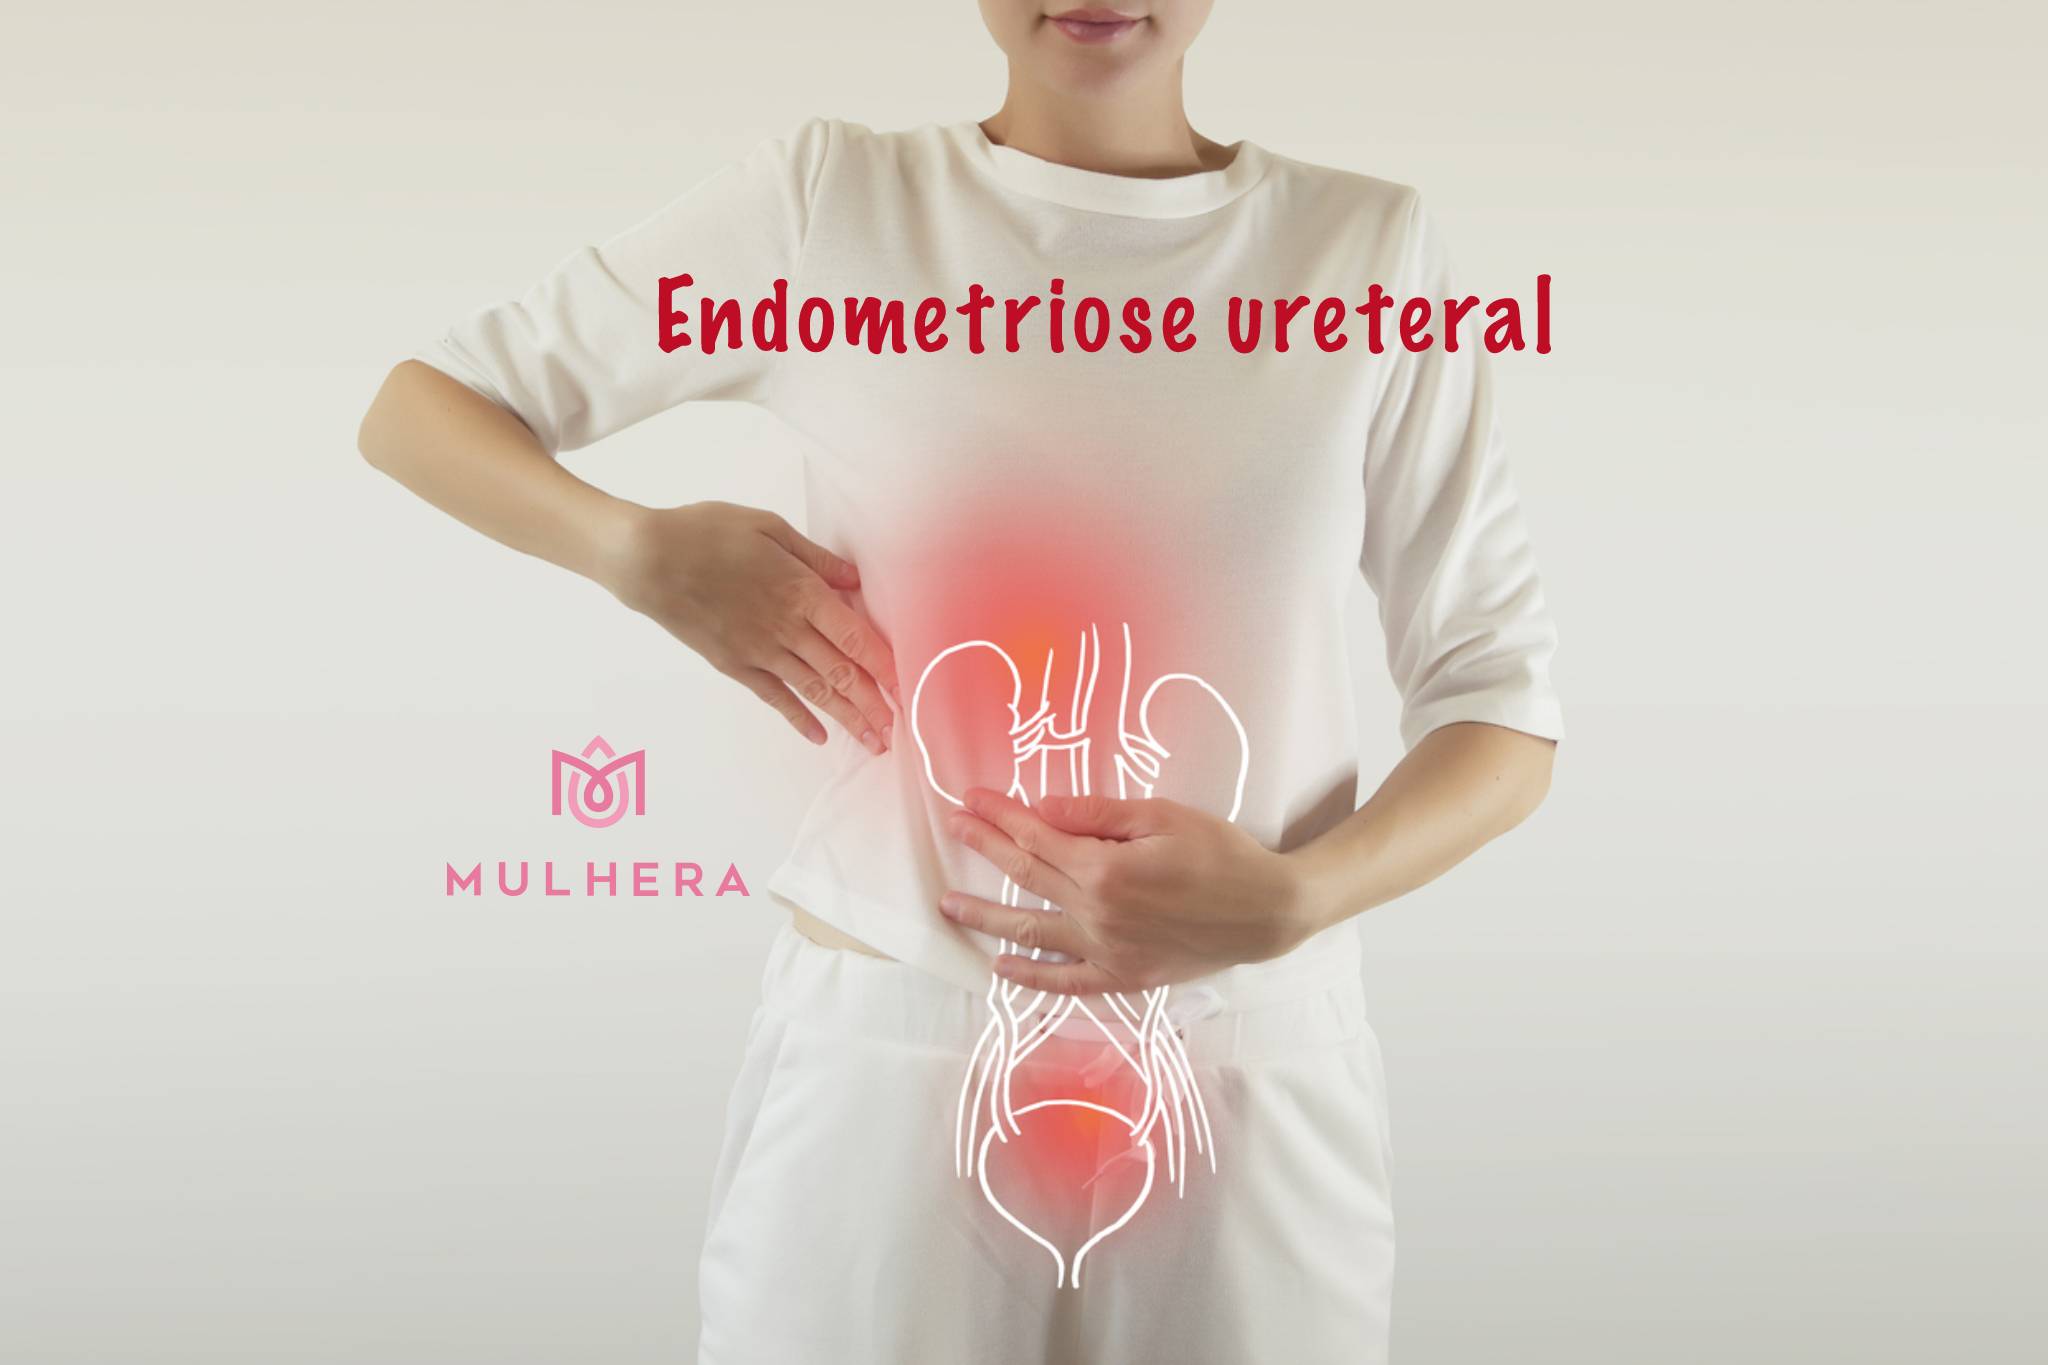 Endometriose ureteral